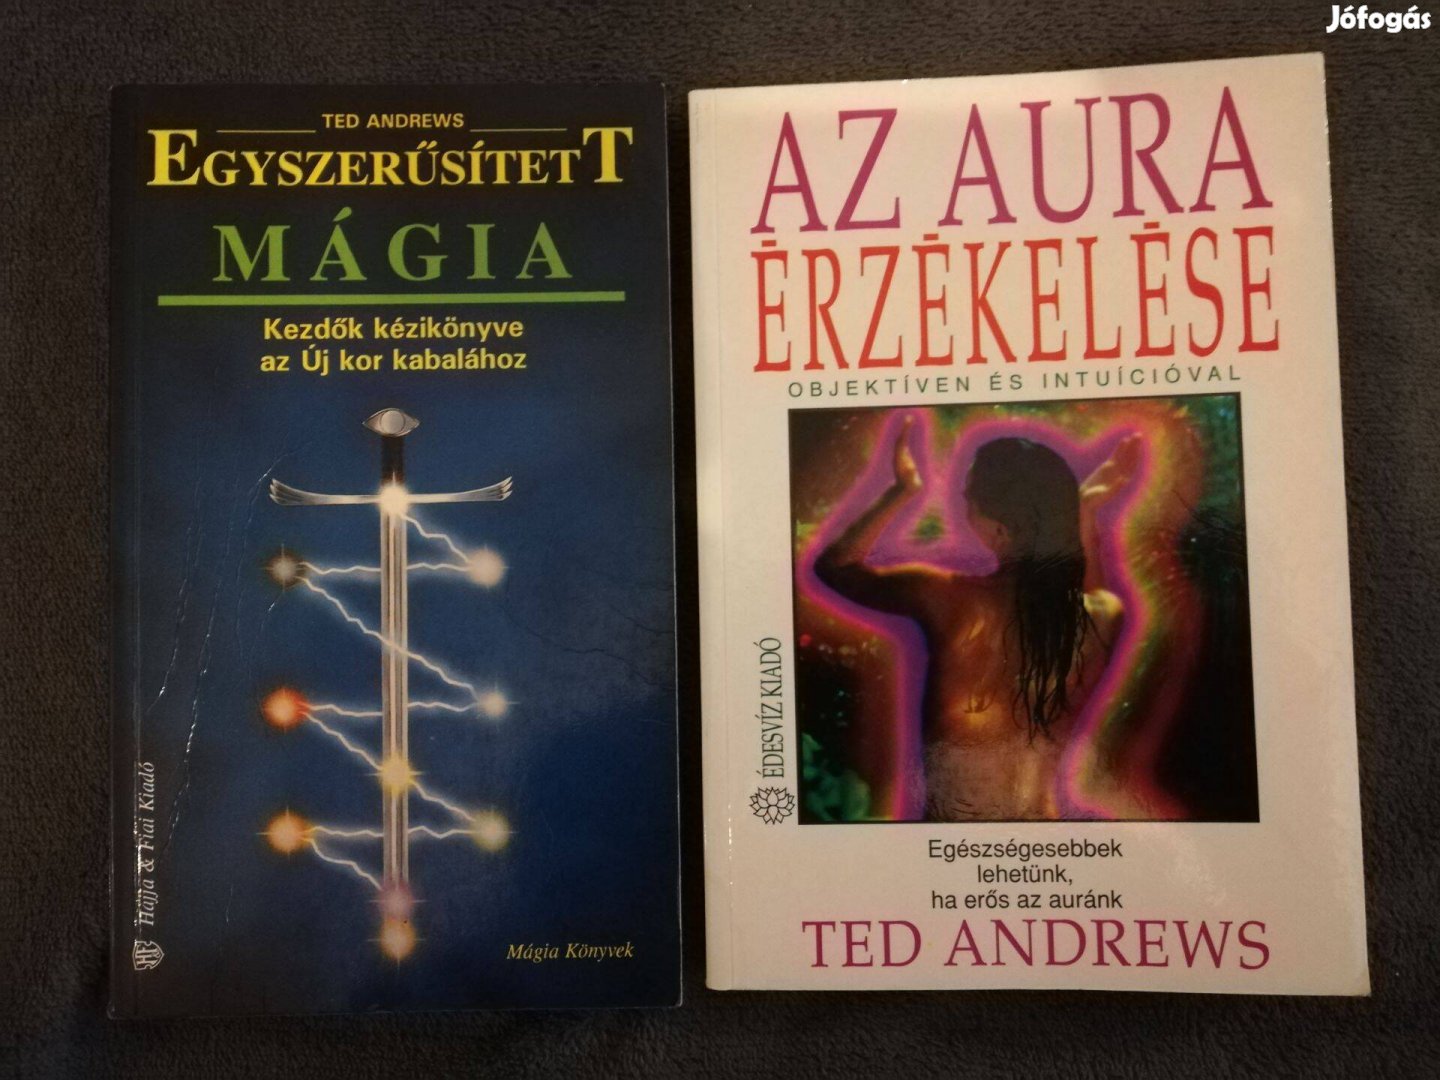 Ted Andrews - Egyszerűsített mágia / Az aura érzékelése